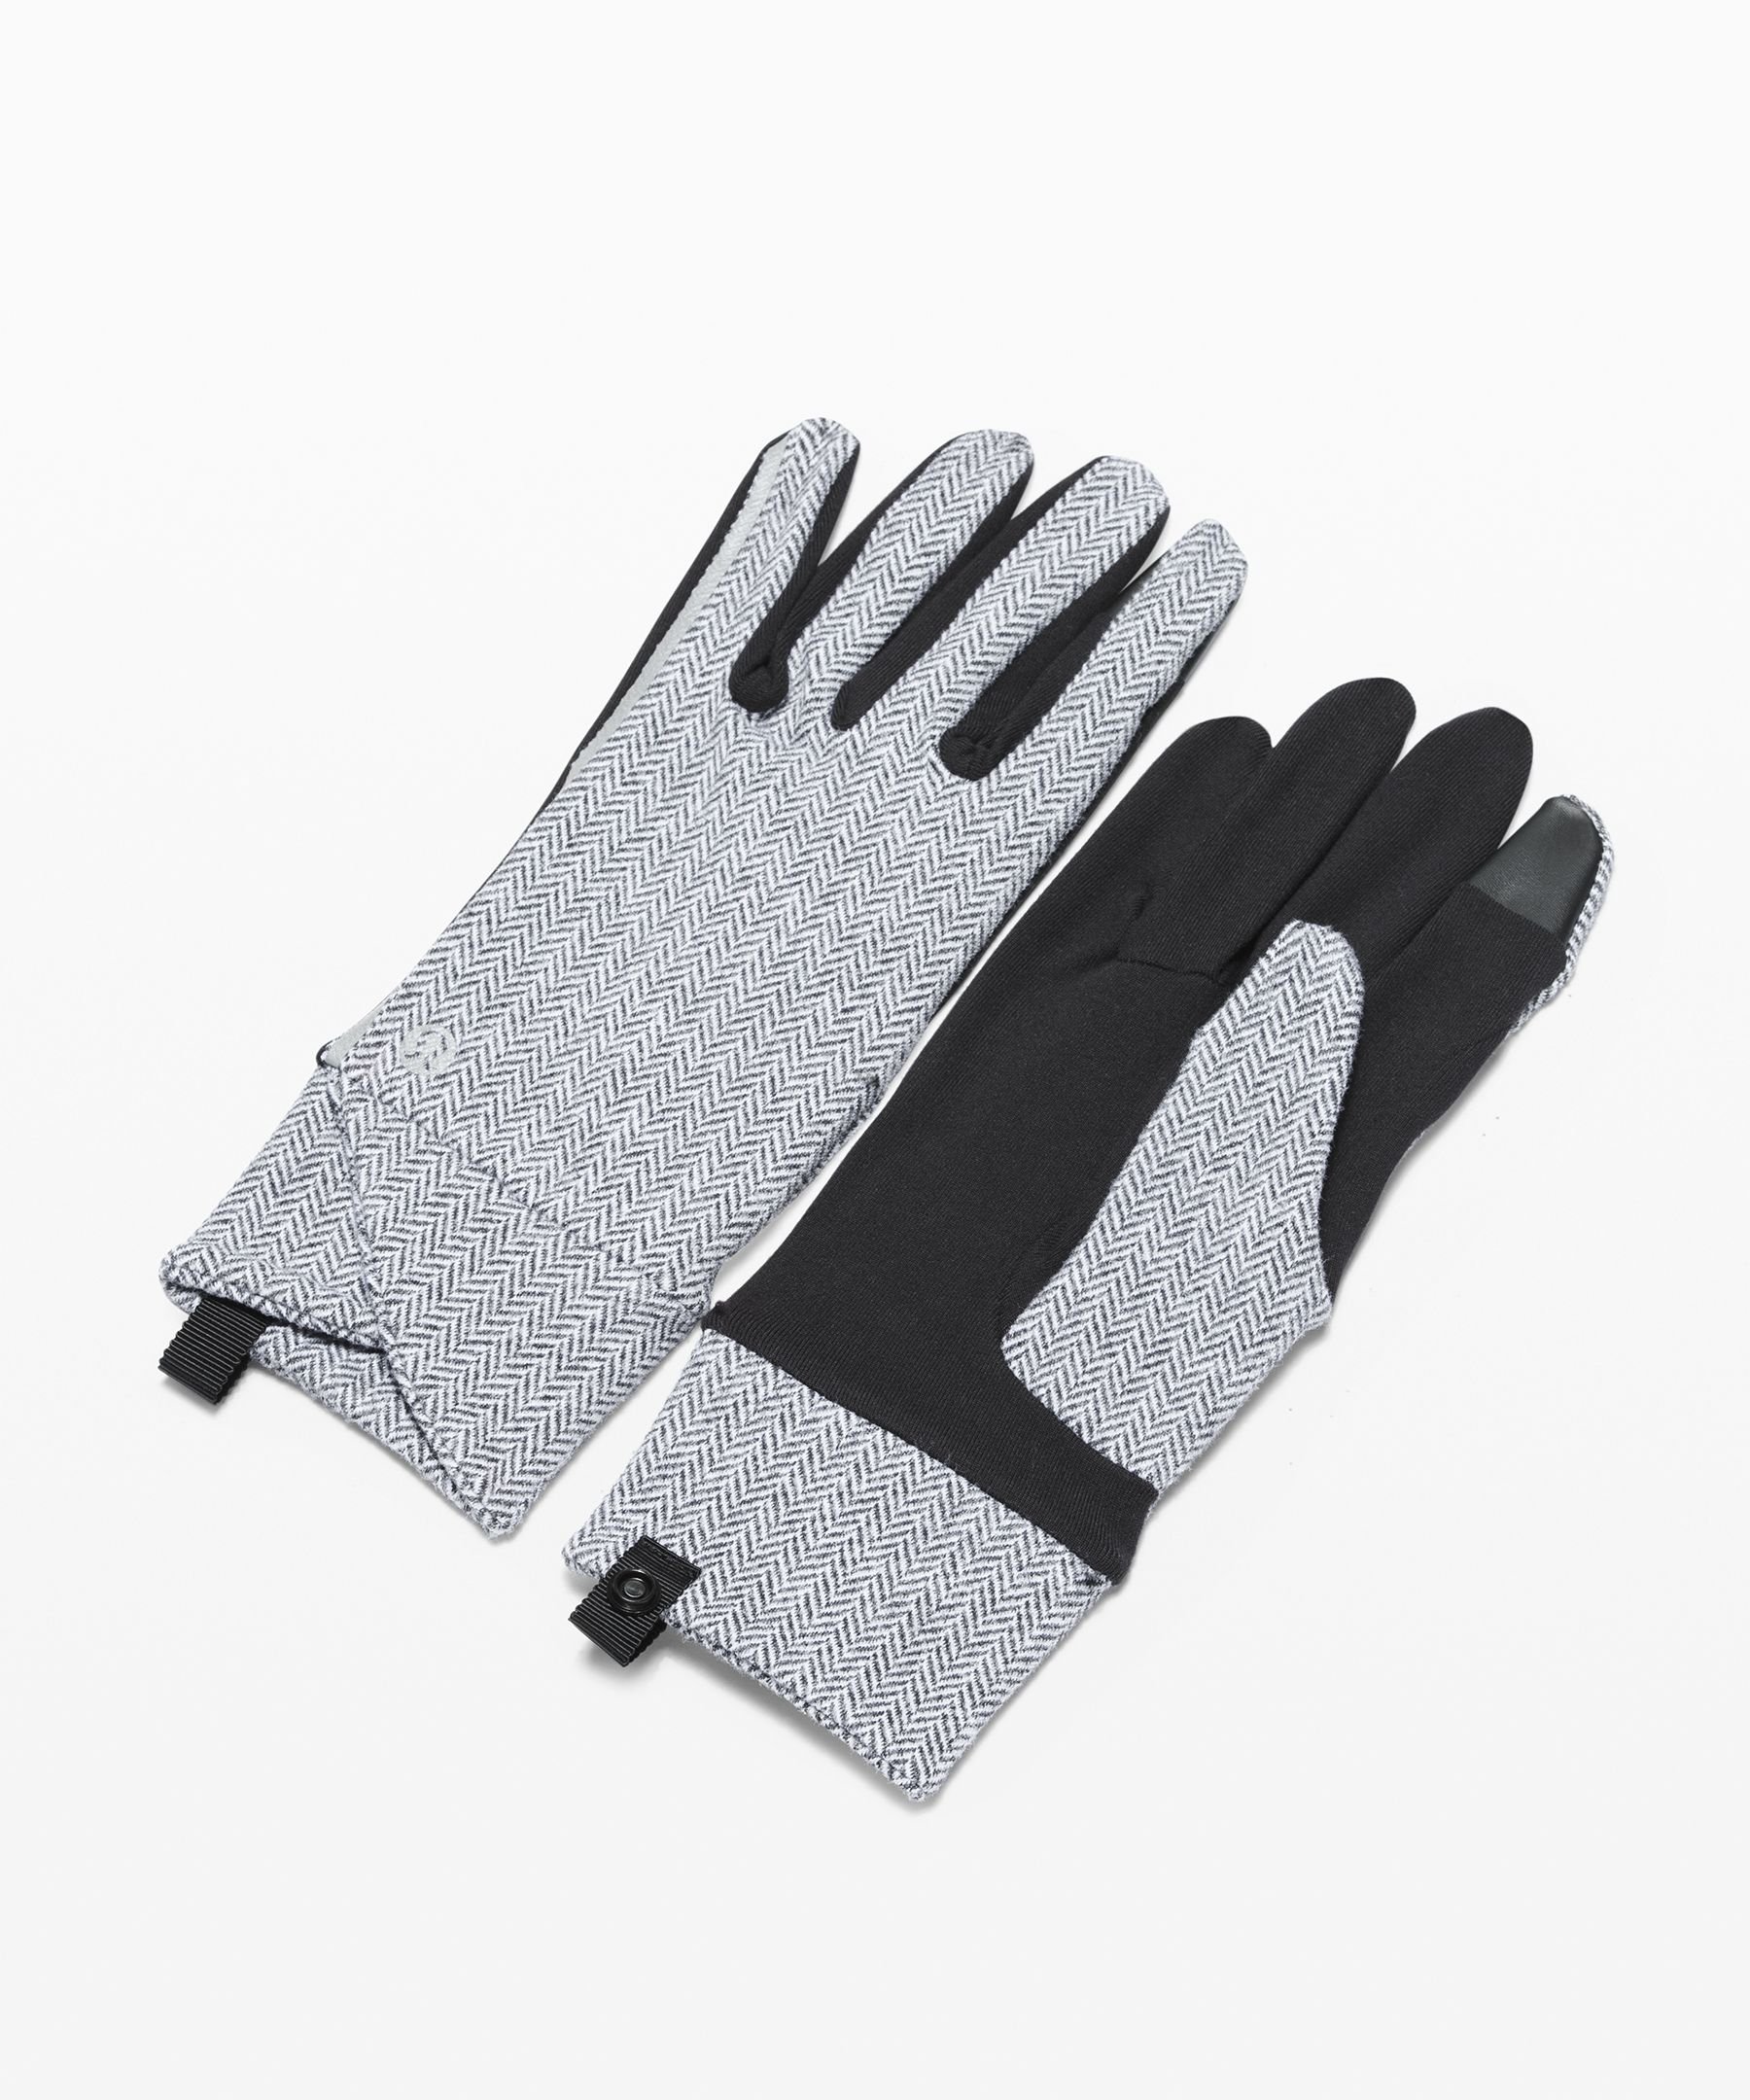 lululemon winter gloves